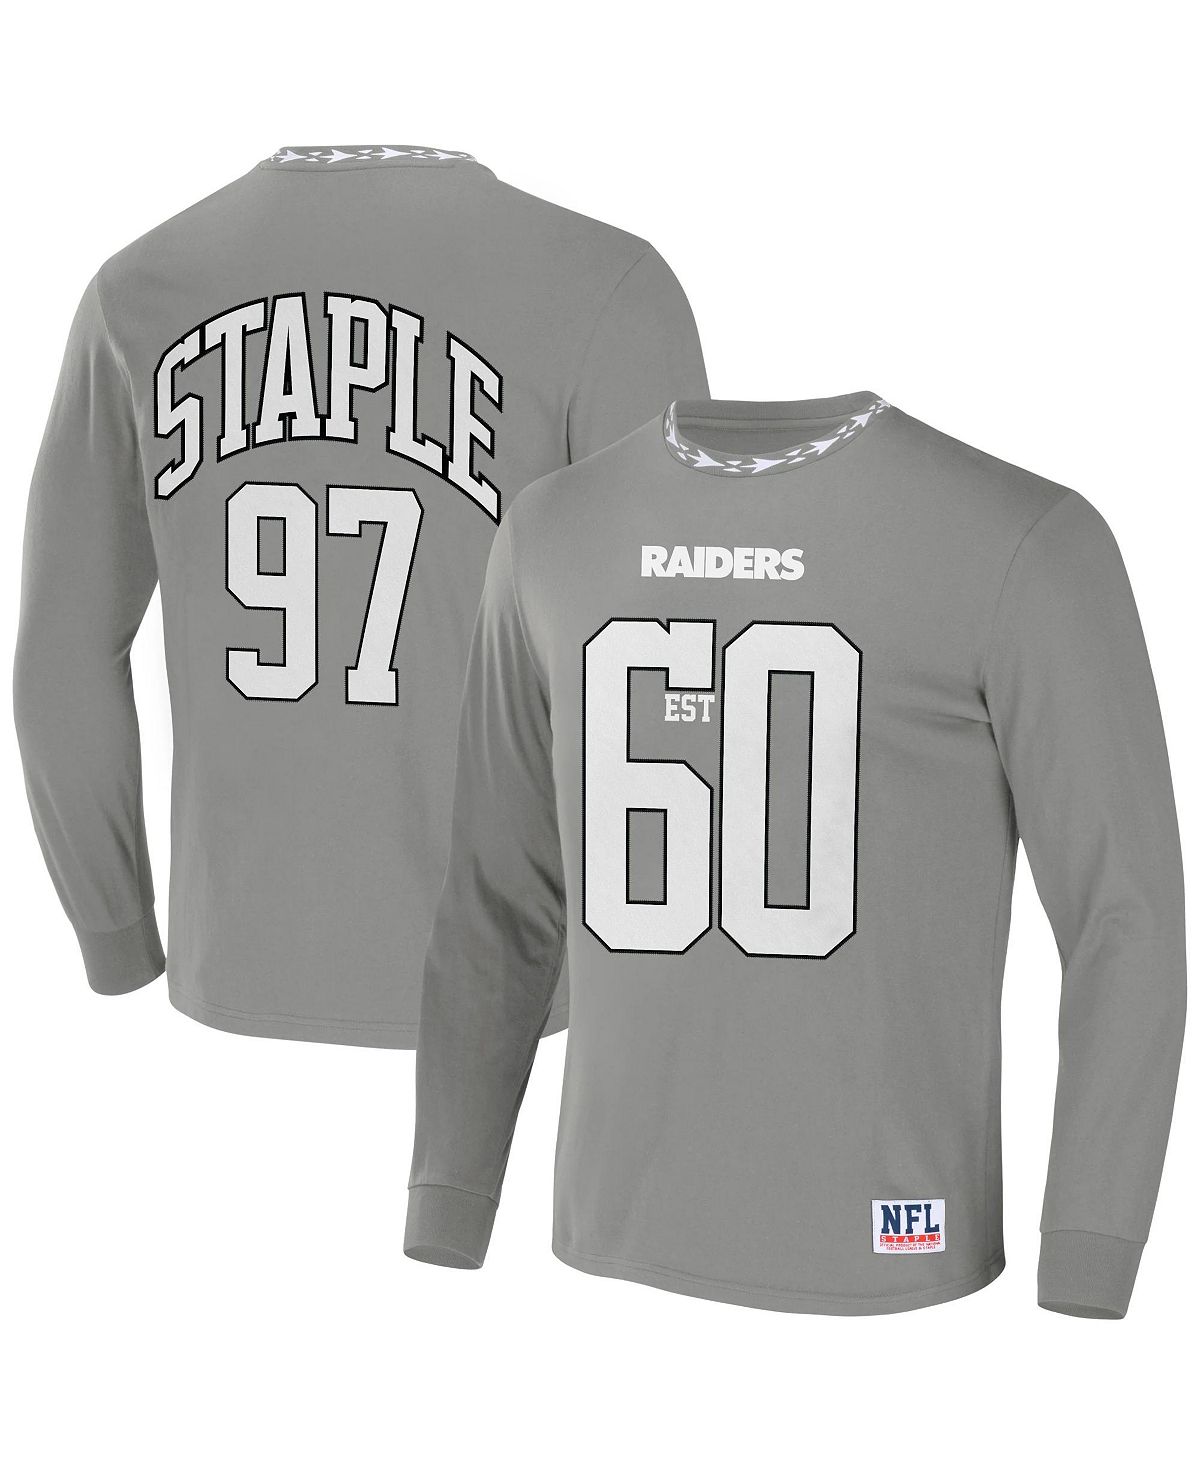 Мужская футболка nfl x staple grey las vegas raiders core с длинным рукавом в стиле джерси NFL Properties, серый